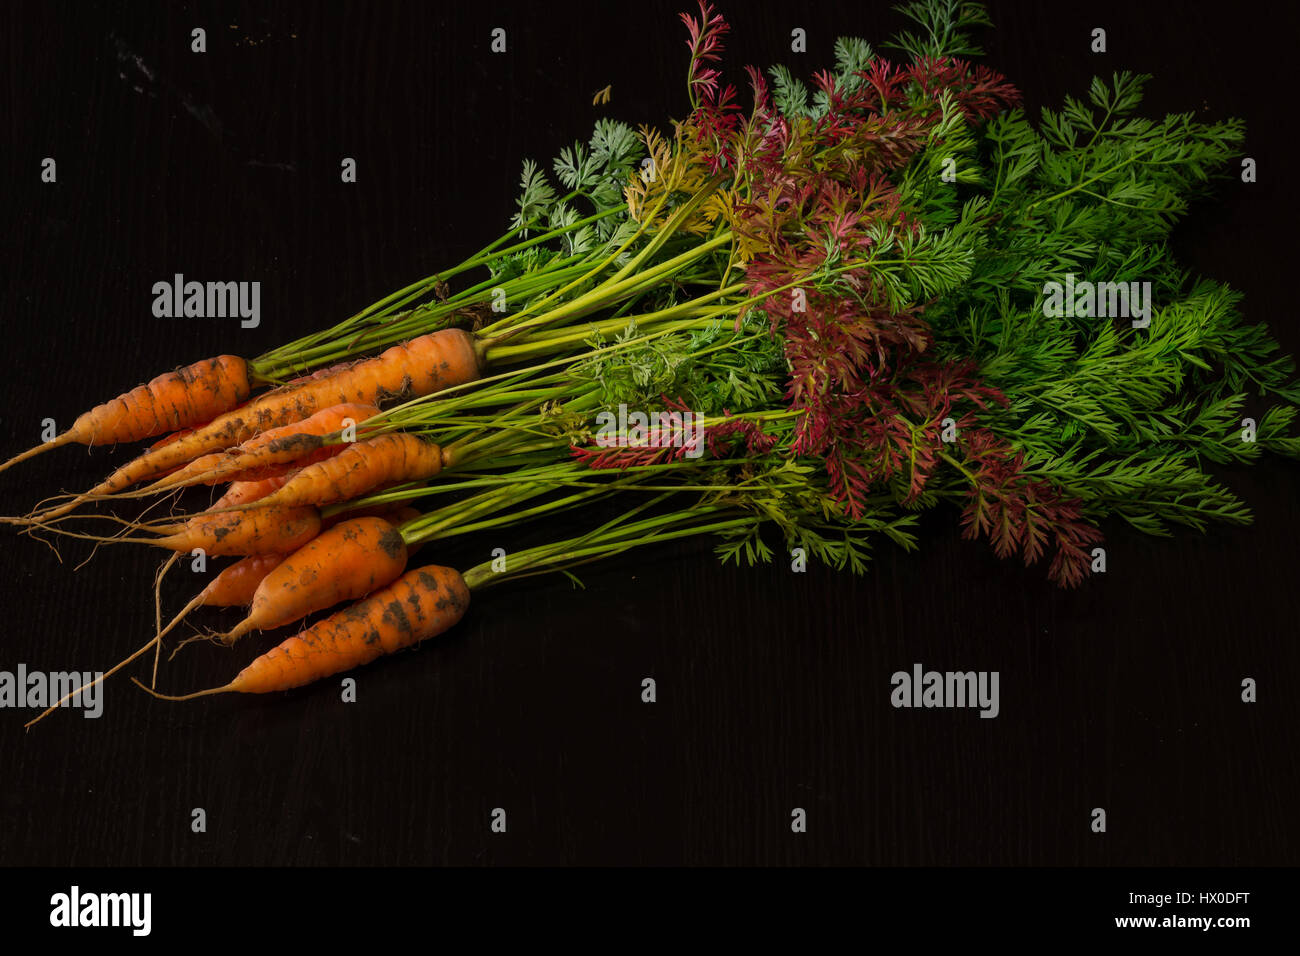 Frisch, Landwirt, junge Karotten mit einem schönen Tops auf schwarz lackierten hölzernen Hintergrund Stockfoto